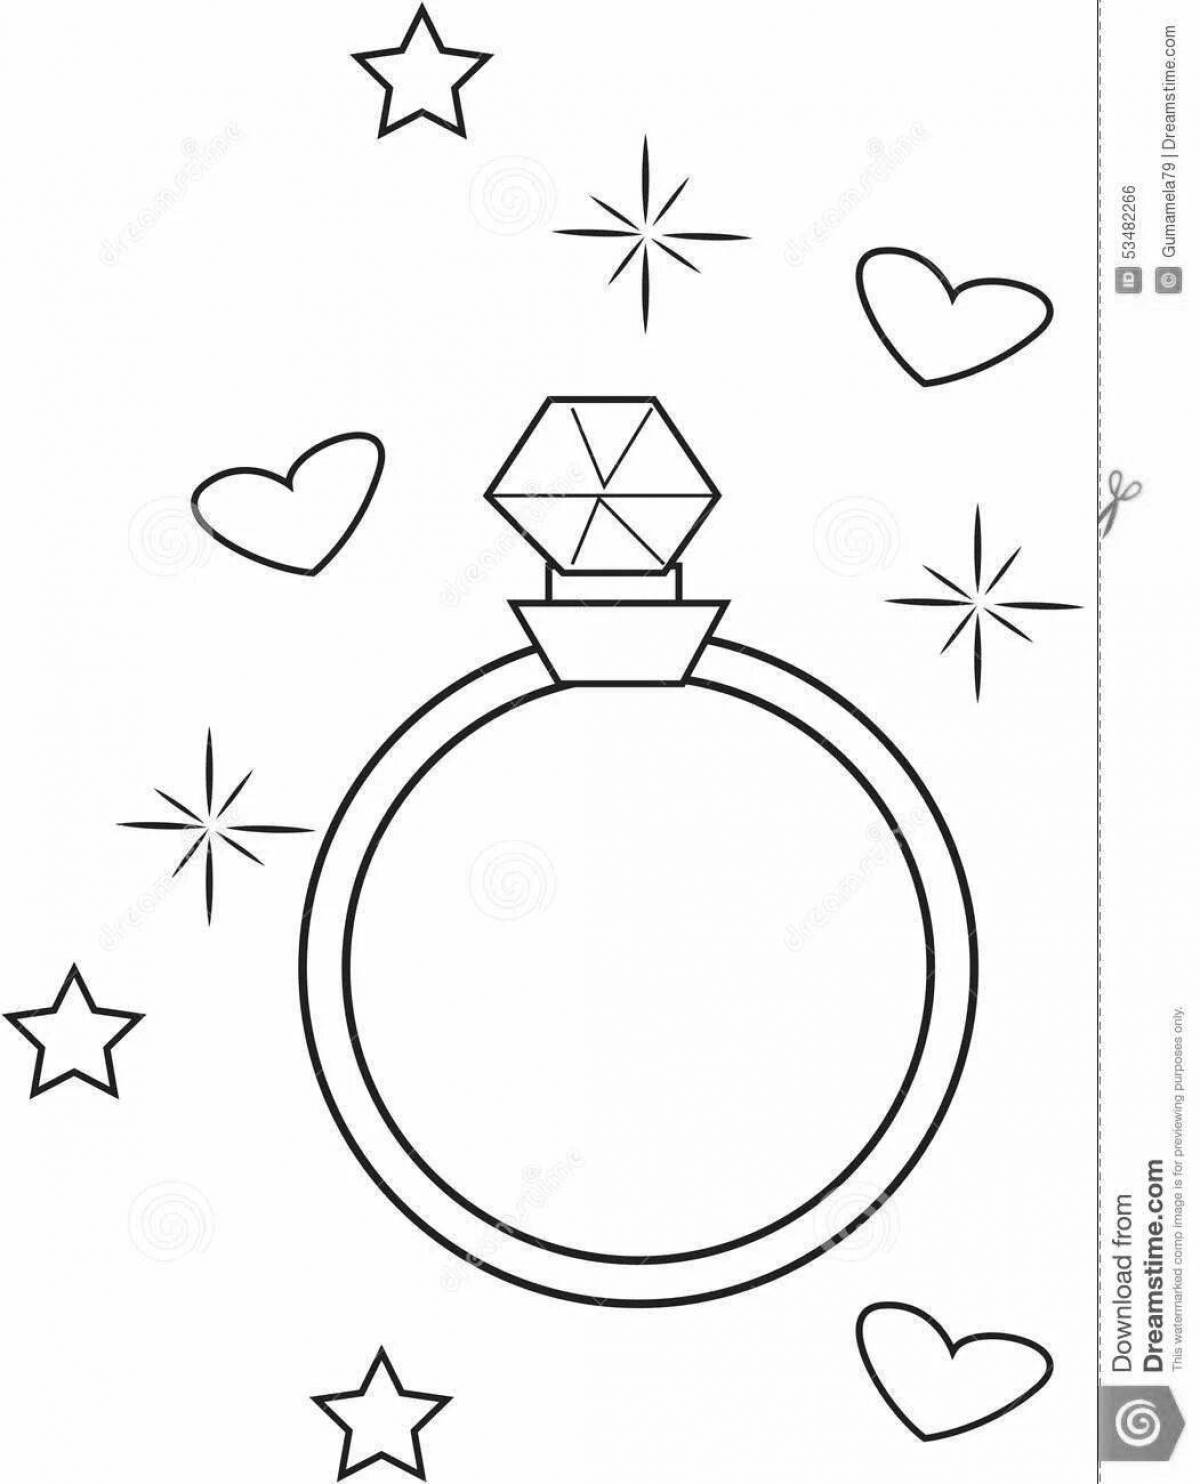 Раскраска гламурное кольцо для детей